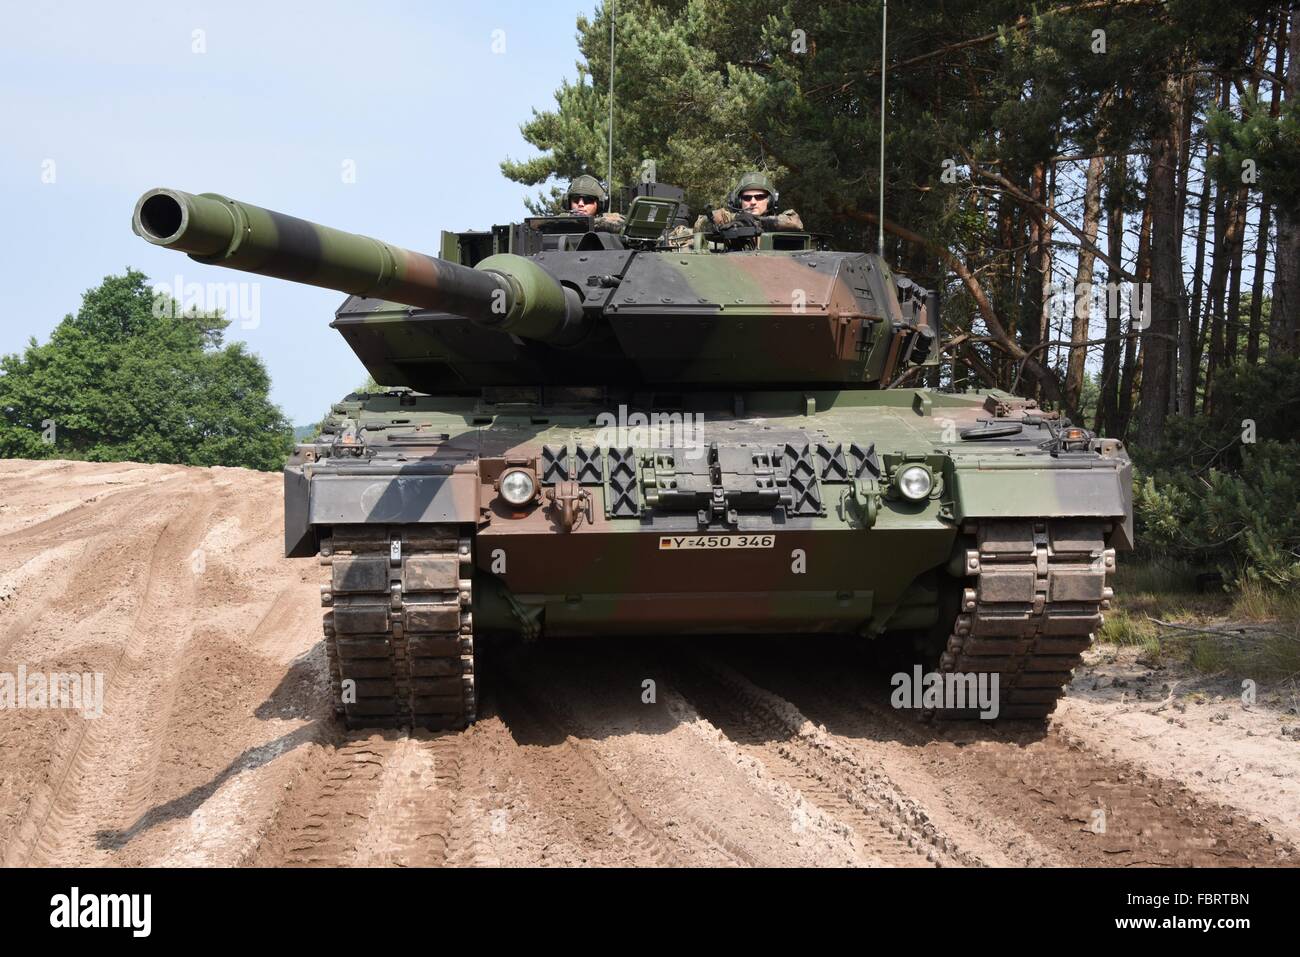 leopard-2a7-char-de-combat-principal-de-la-2eme-compagnie-203e-bataillon-darmure-au-cours-dun-exercice-a-la-formation-locale-pres-de-stapel-augustdorf-allemagne-fbrtbn.jpg